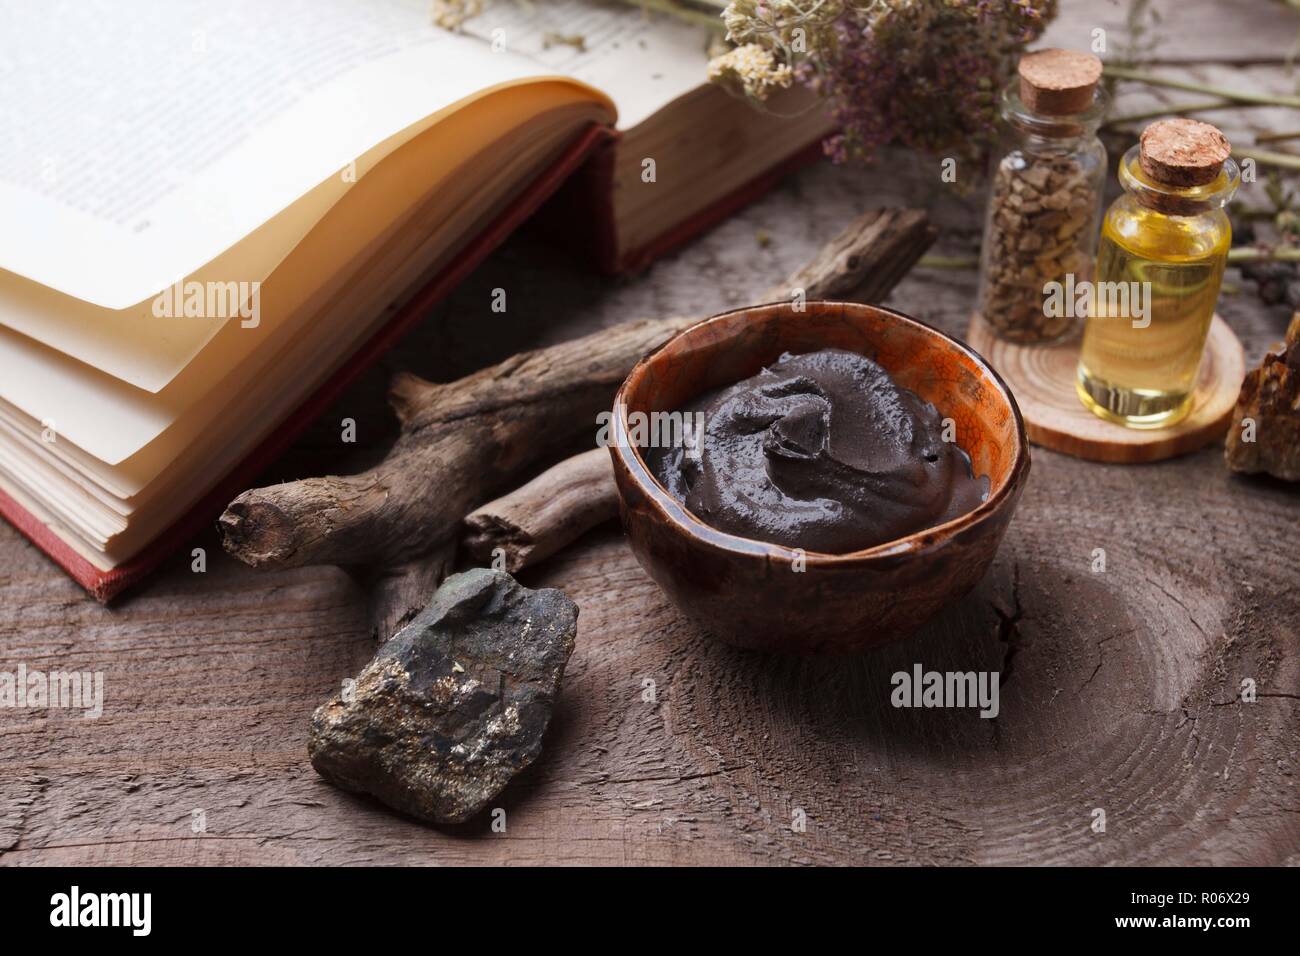 Masque de boue noire cosmétique préparation dans un bol en céramique vintage sur fond de bois. Libre de texture de l'argile du visage émulsion. Les cosmétiques naturels pour la maison ou Banque D'Images